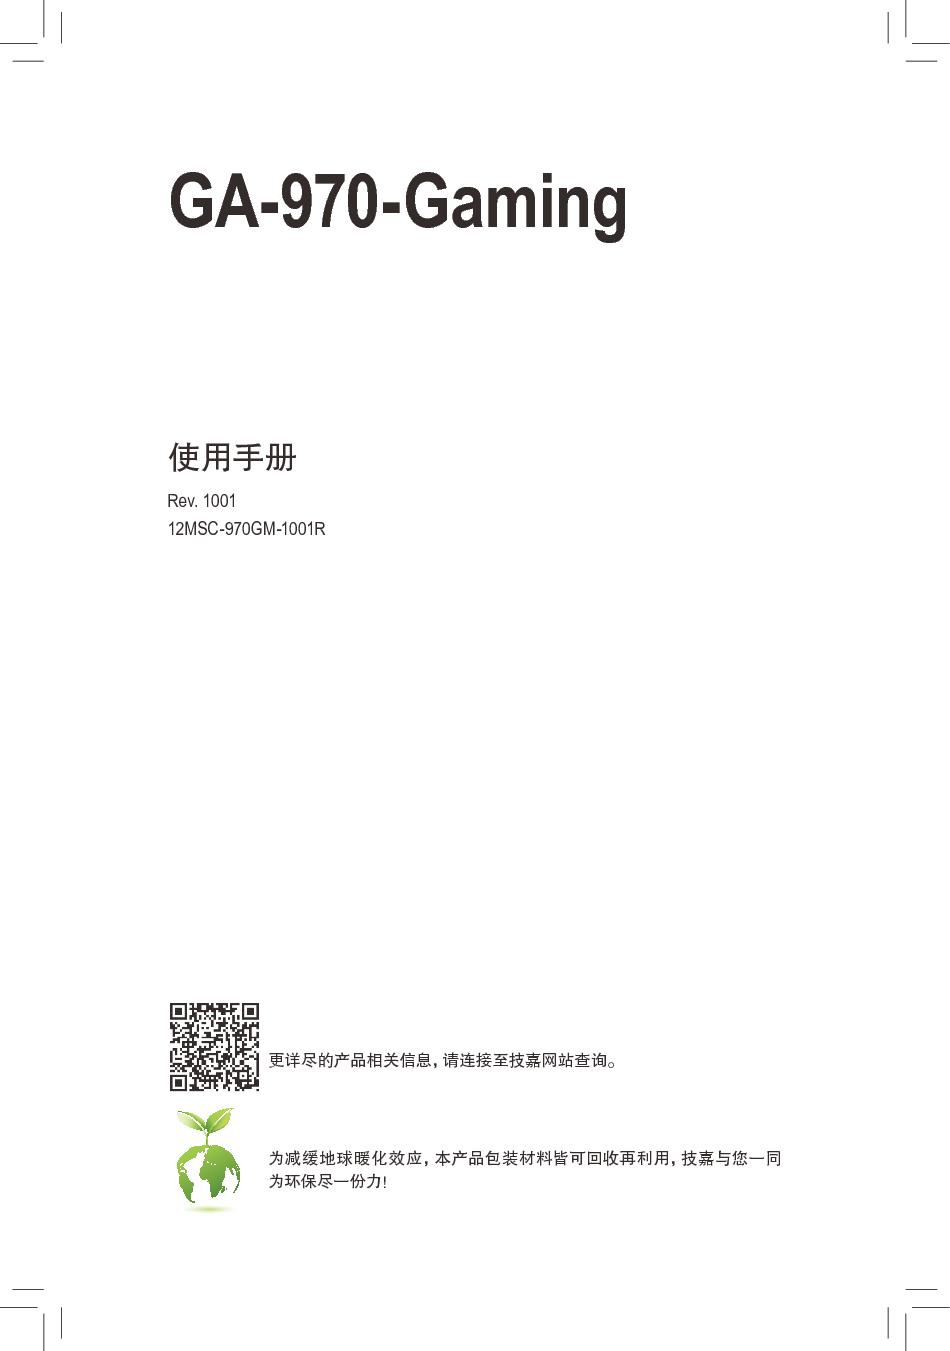 技嘉 Gigabyte GA-970-GAMING 1001版 使用手册 封面